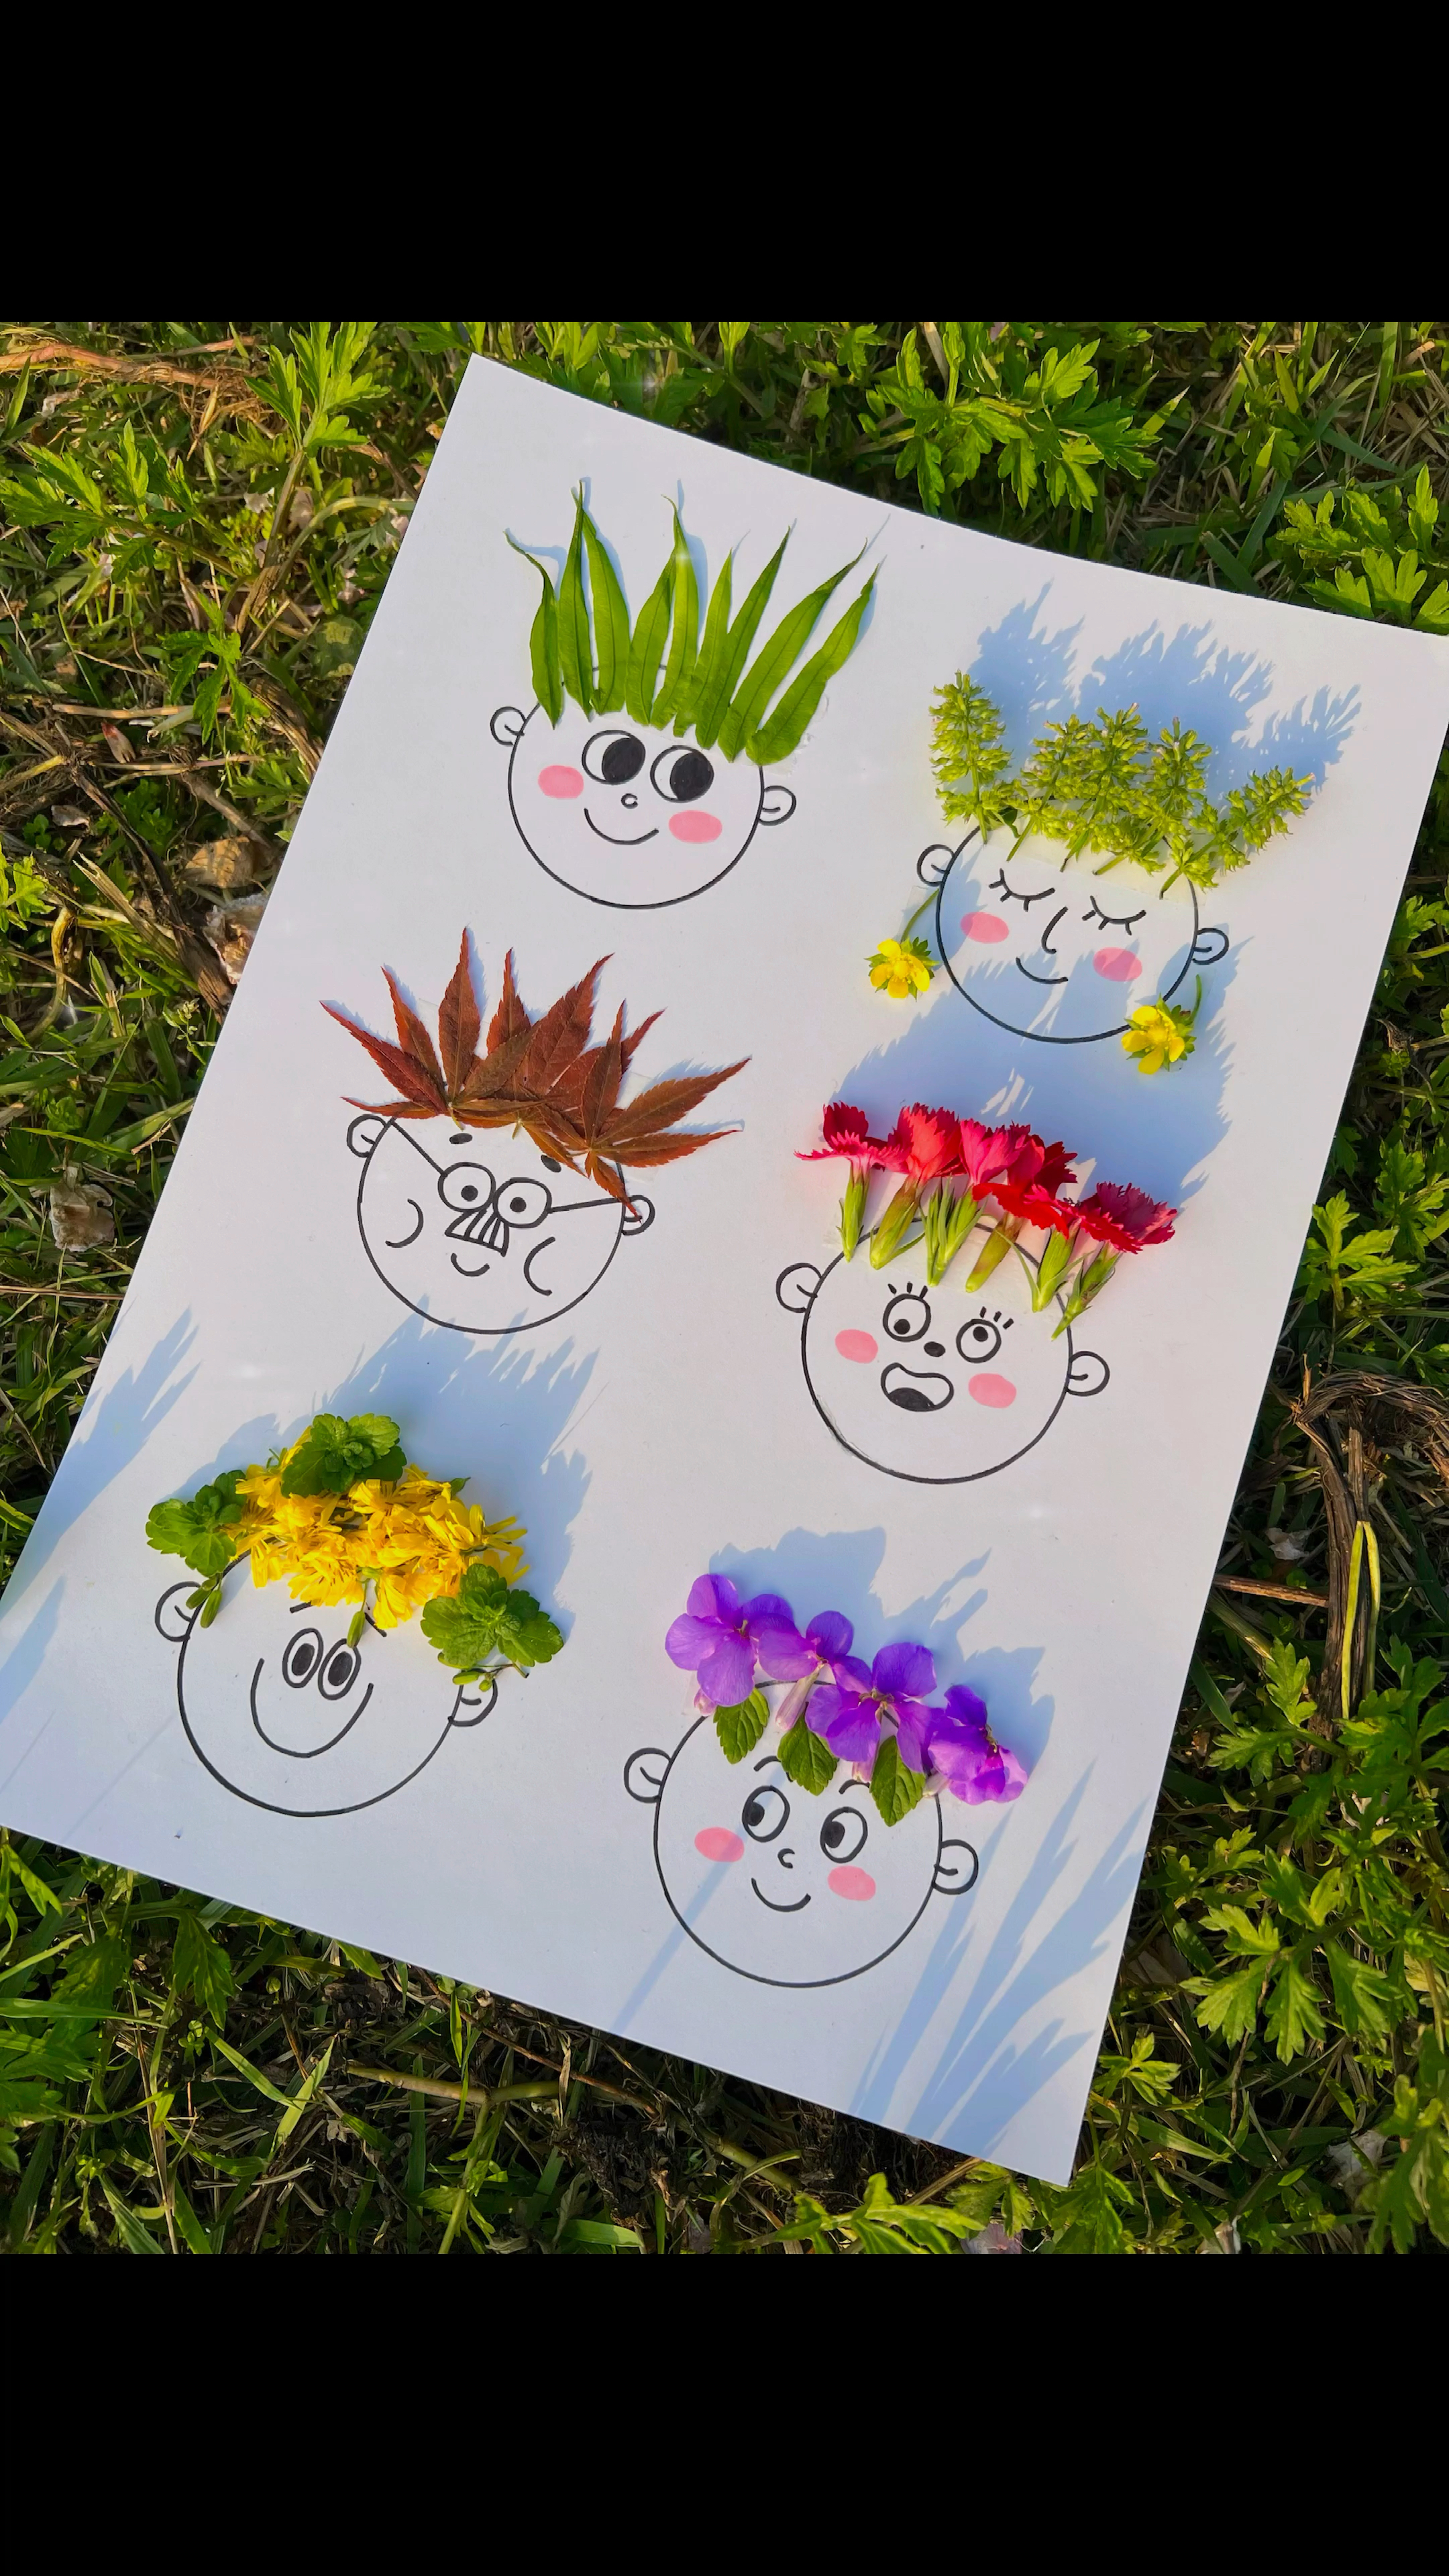 用春天的色彩给小人装饰头发吧亲子手工创意手工幼儿园手工自然美育